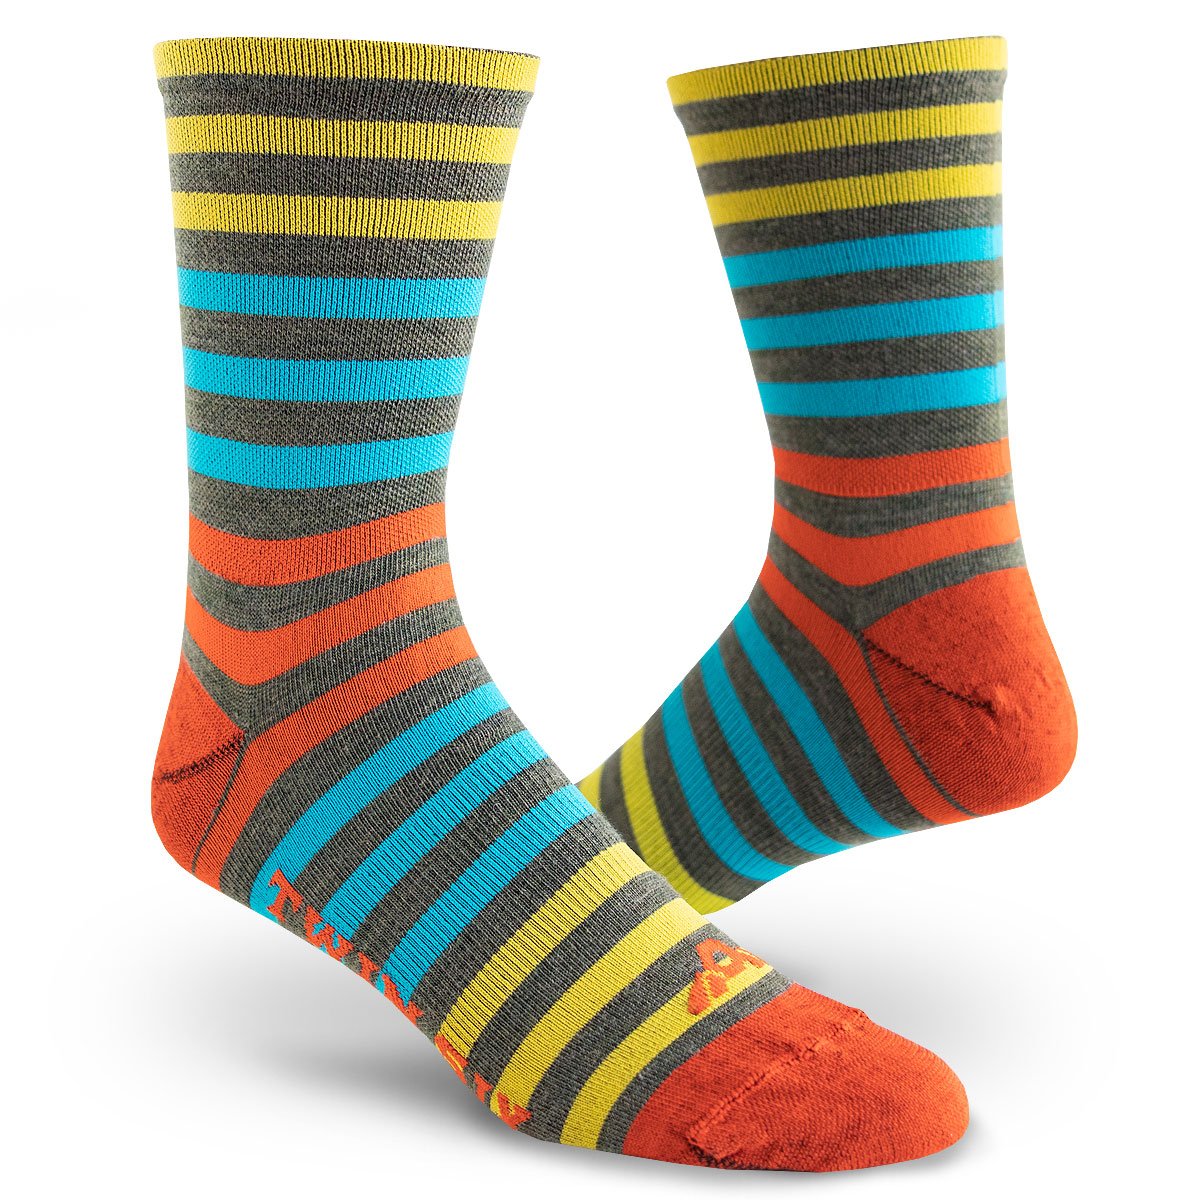 TWINSIX Wool Socks